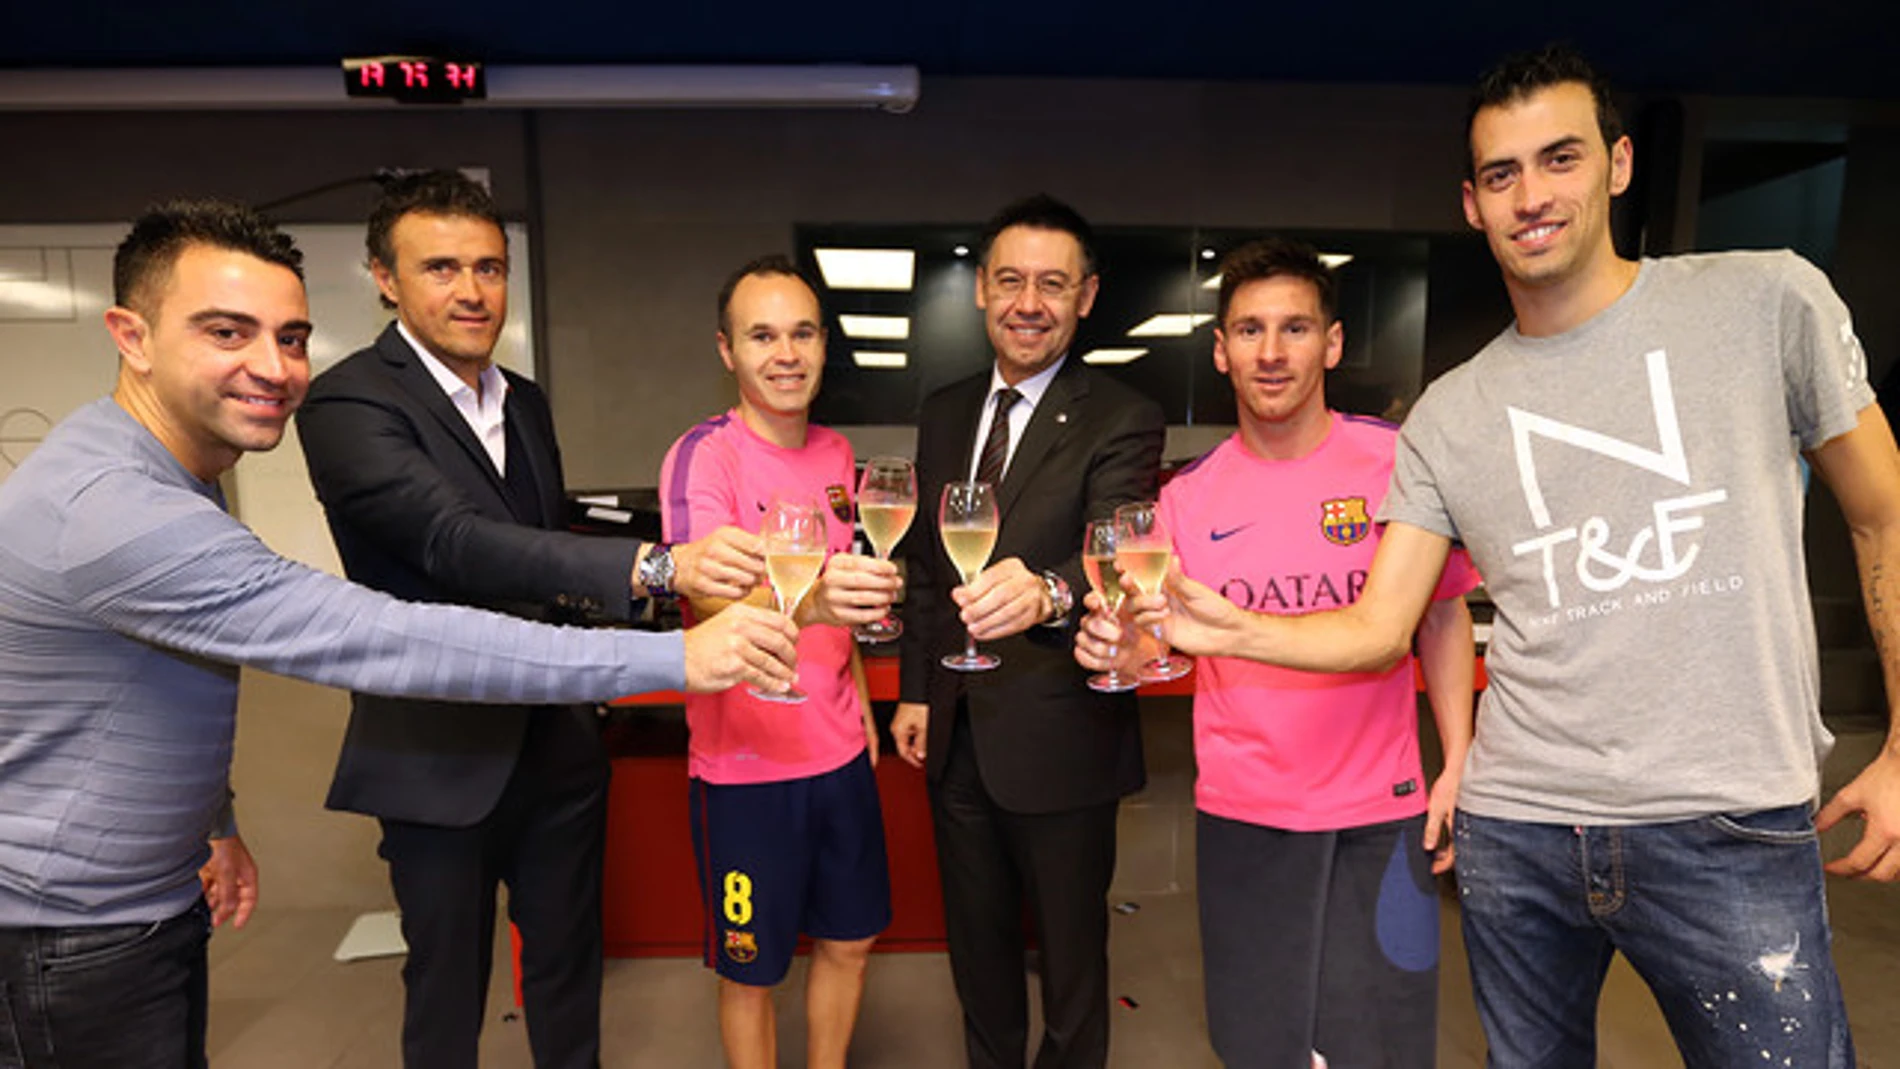 De izquierda a derecha, Xavi, Luis Enrique, Iniesta, Bartomeu, Messi y Busquets, brindando en el vestuario